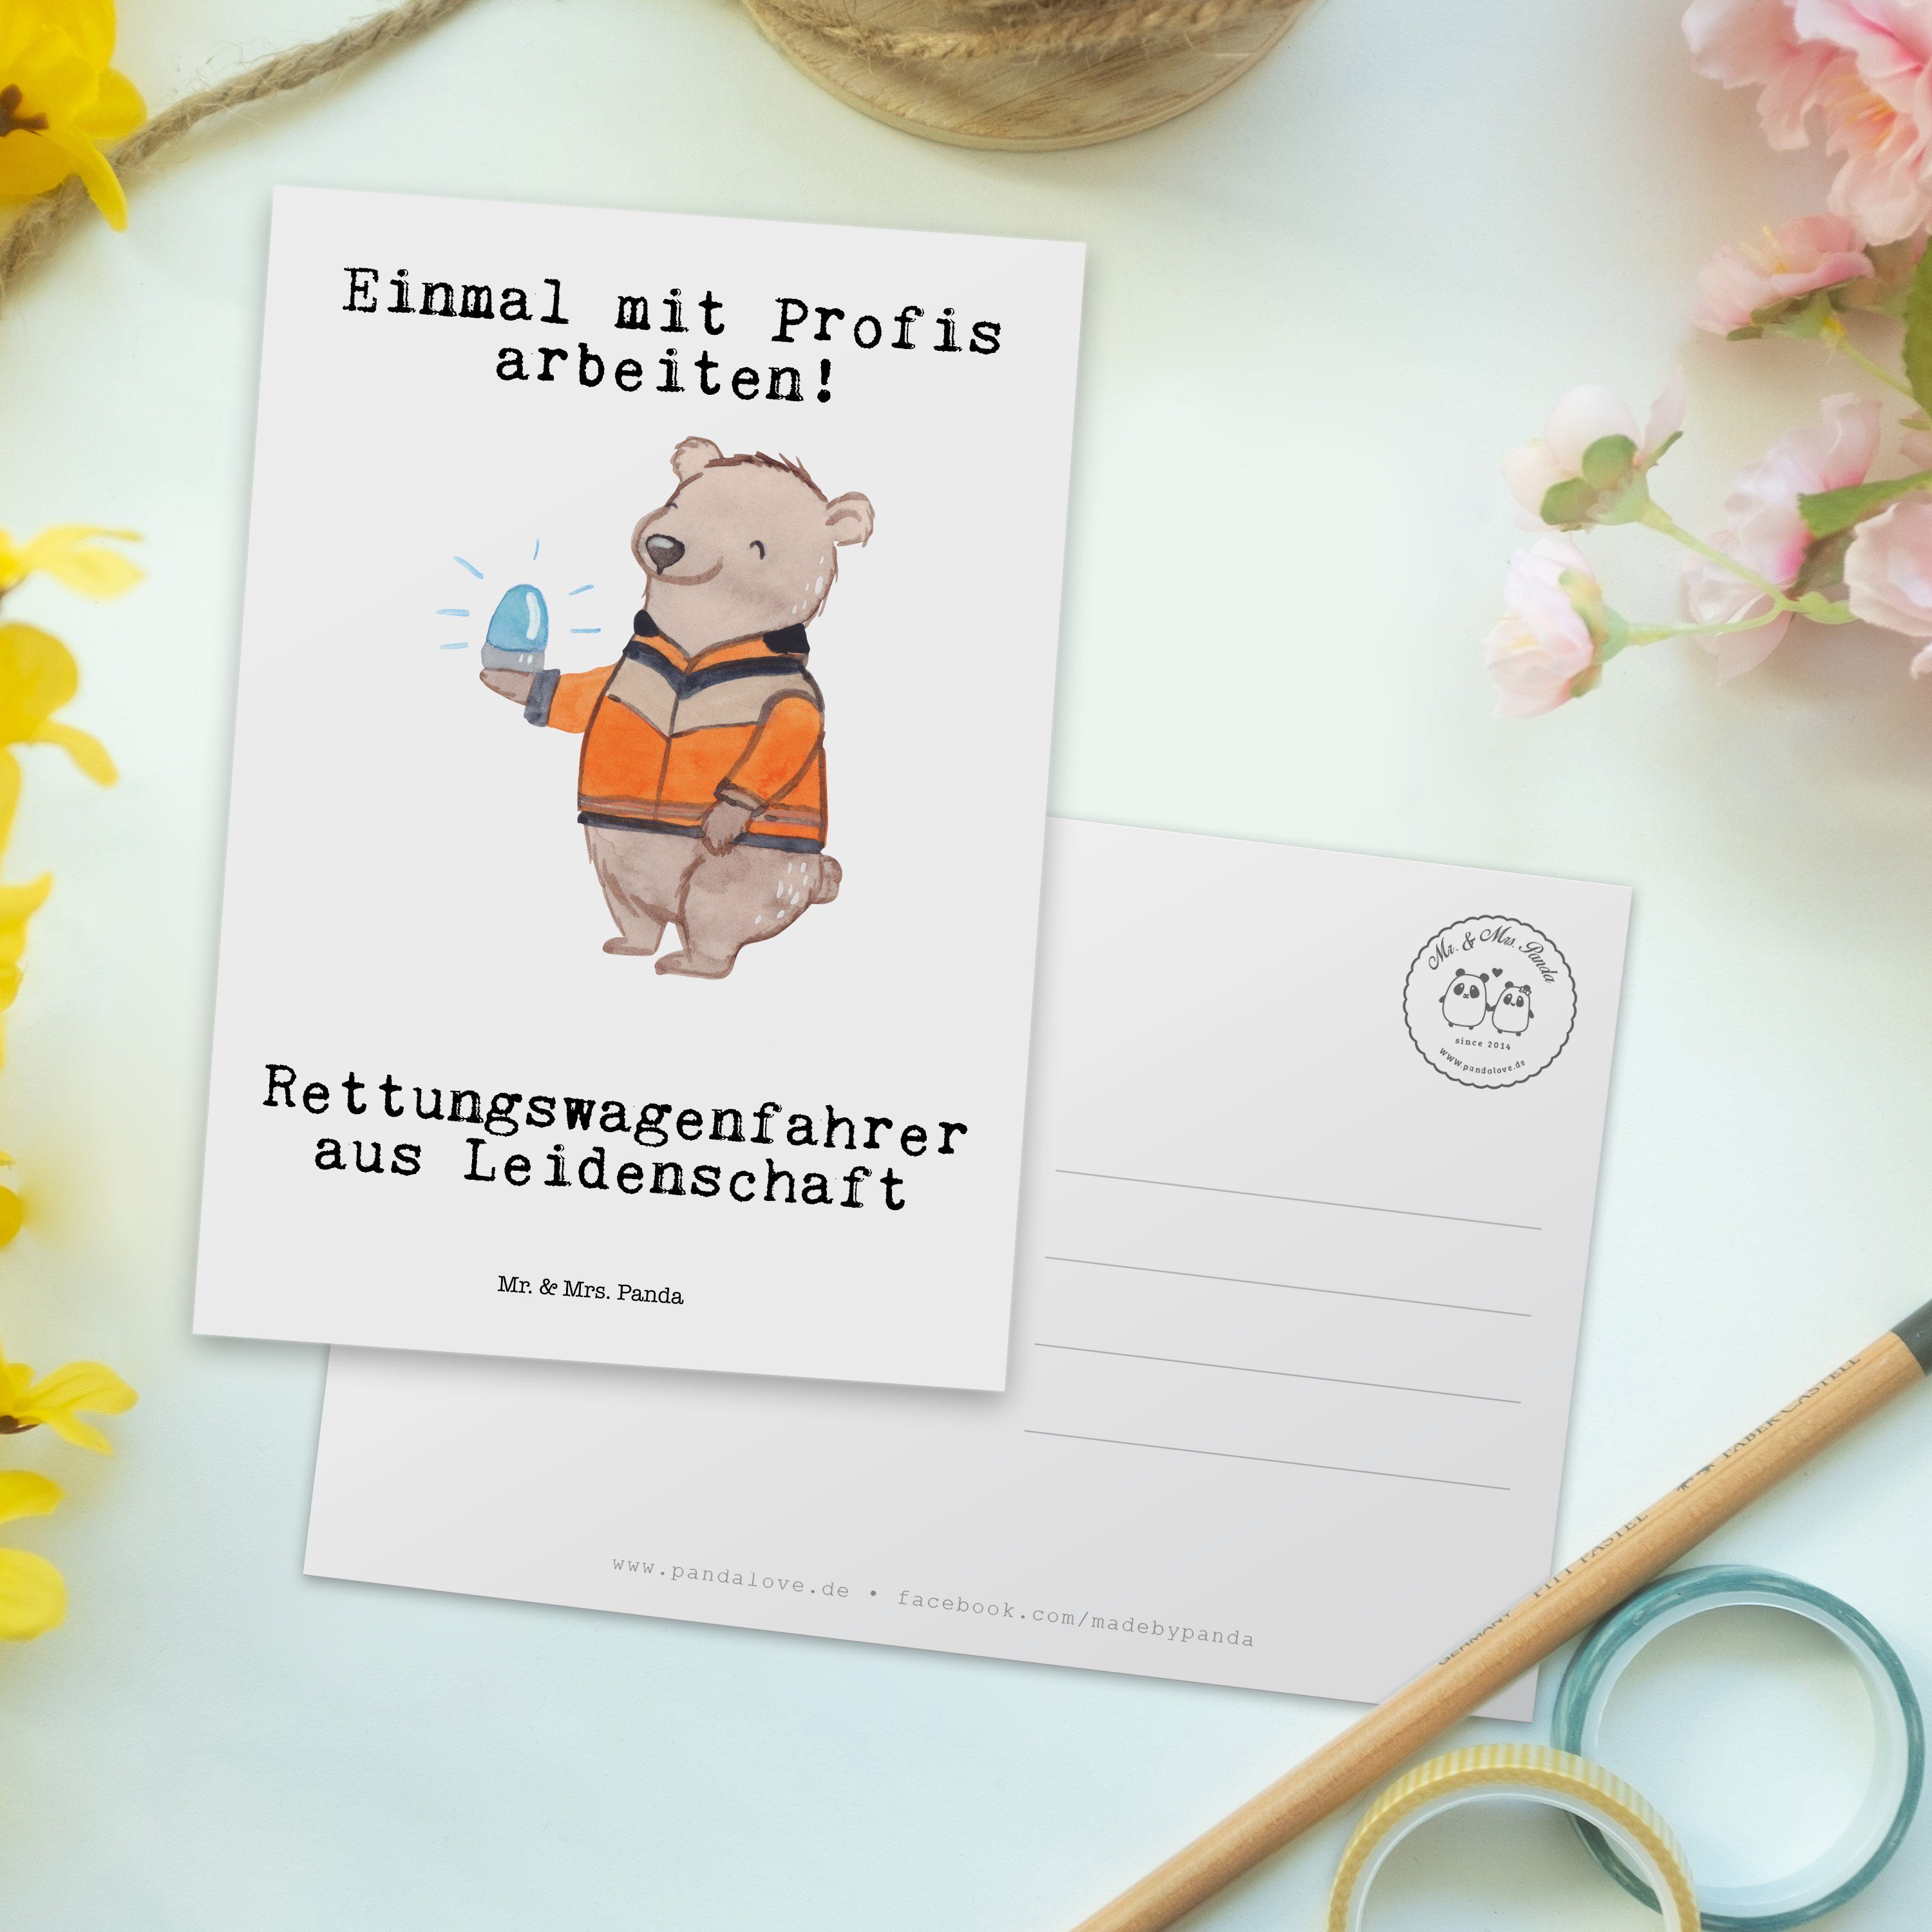 Mrs. Geburtstagska Geschenk, Weiß aus Rettungswagenfahrer Leidenschaft Panda - Mr. - & Postkarte